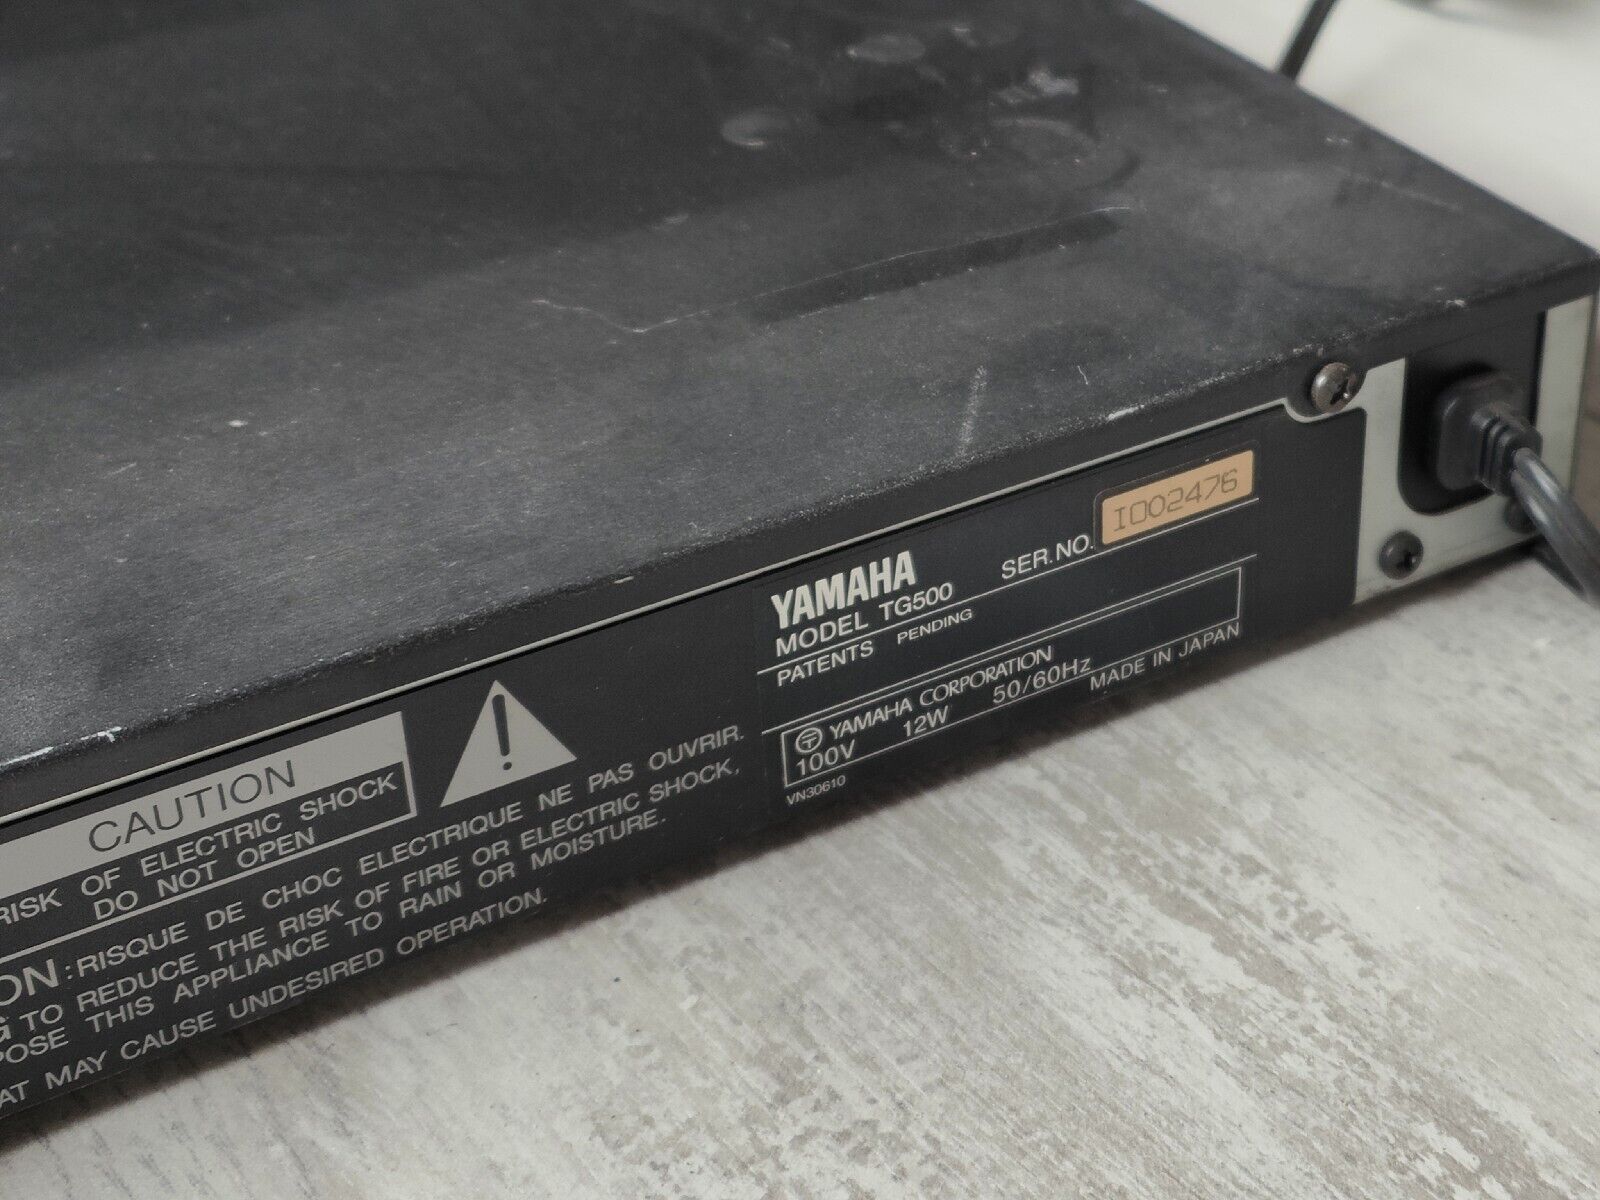 Yamaha TG500 Tone Generator Rack Unit